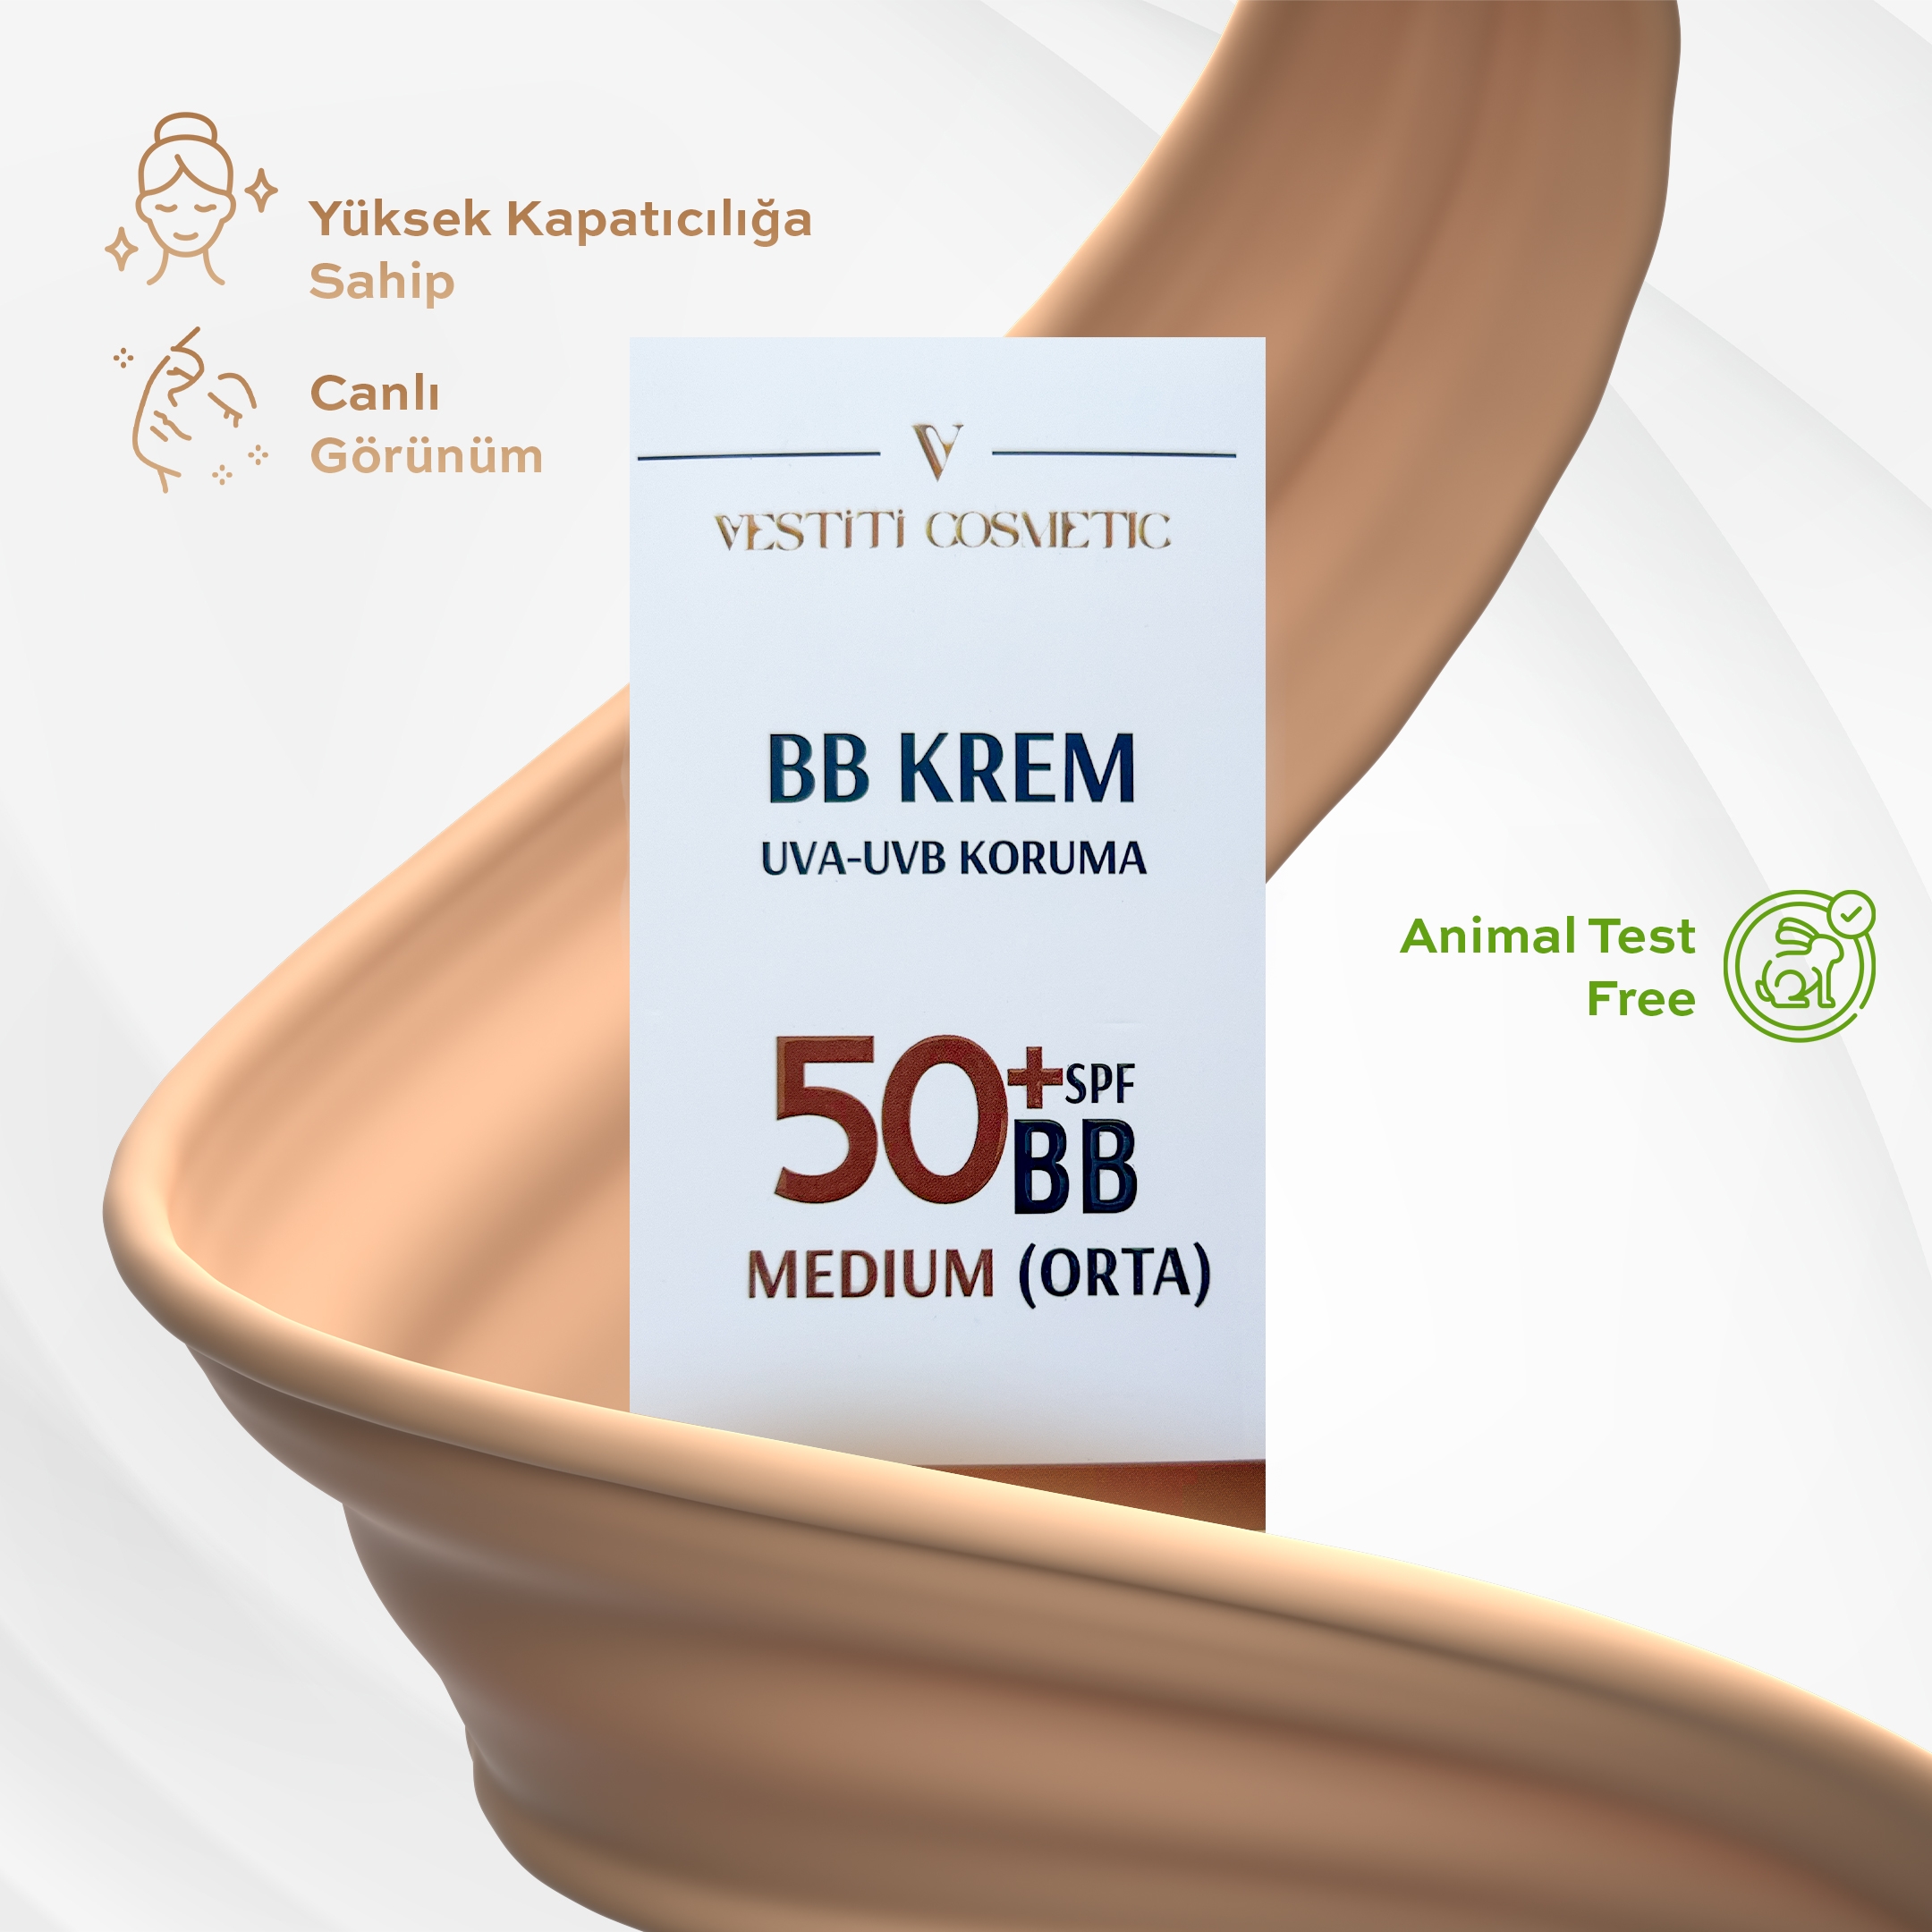 BB Krem Orta (Medium)+50 SPF 